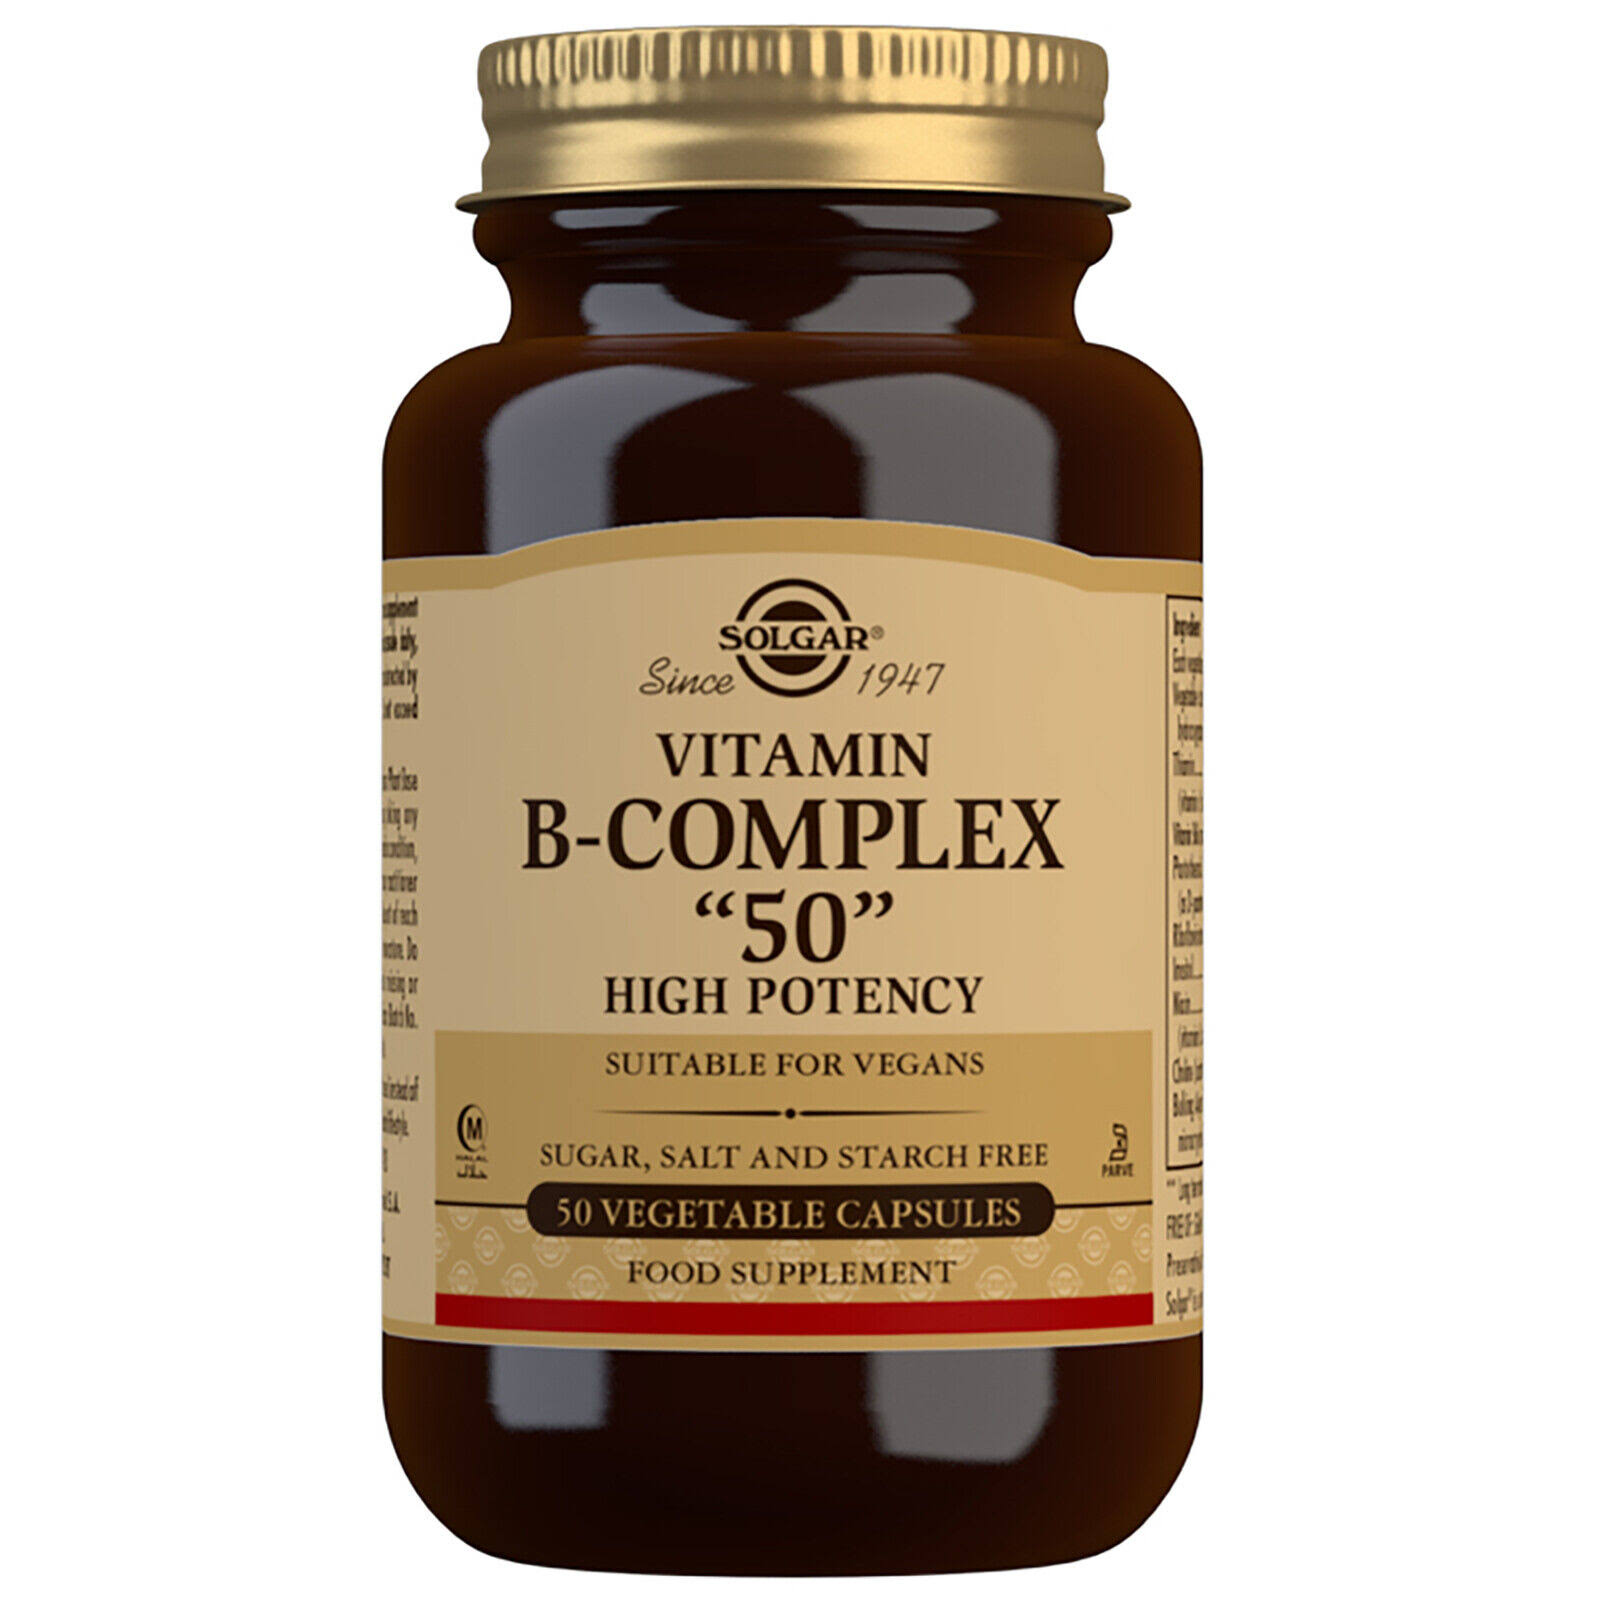 Solgar B-Complex "50" Dietary Supplement - 50 Capsules